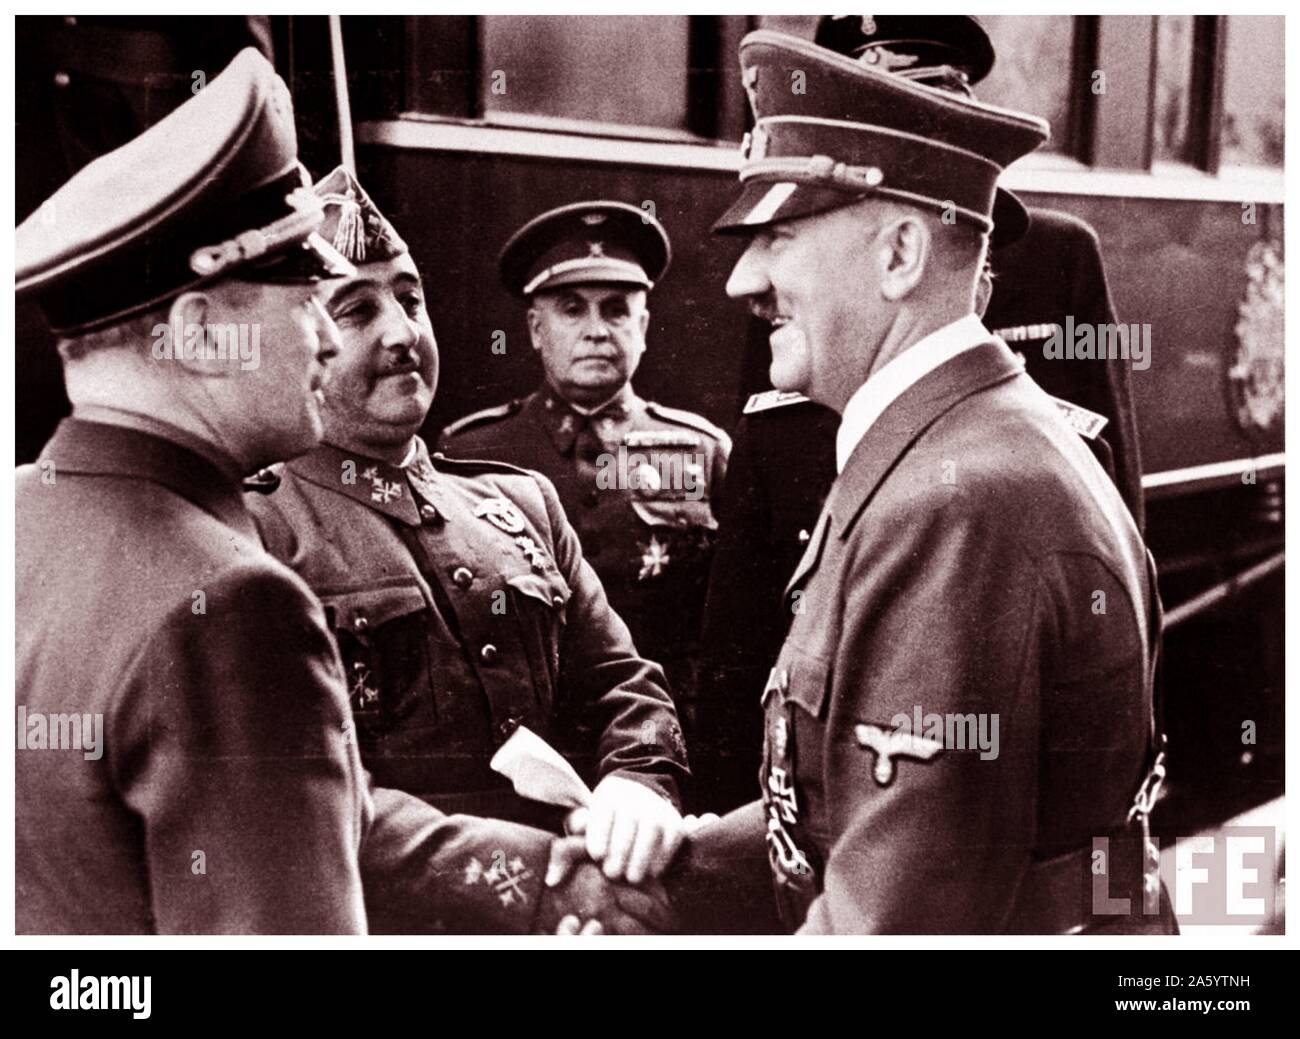 Leader nazi allemand, Adolf Hitler répond aux nationalistes espagnols, le général Franco, à Berlin 1936 Banque D'Images